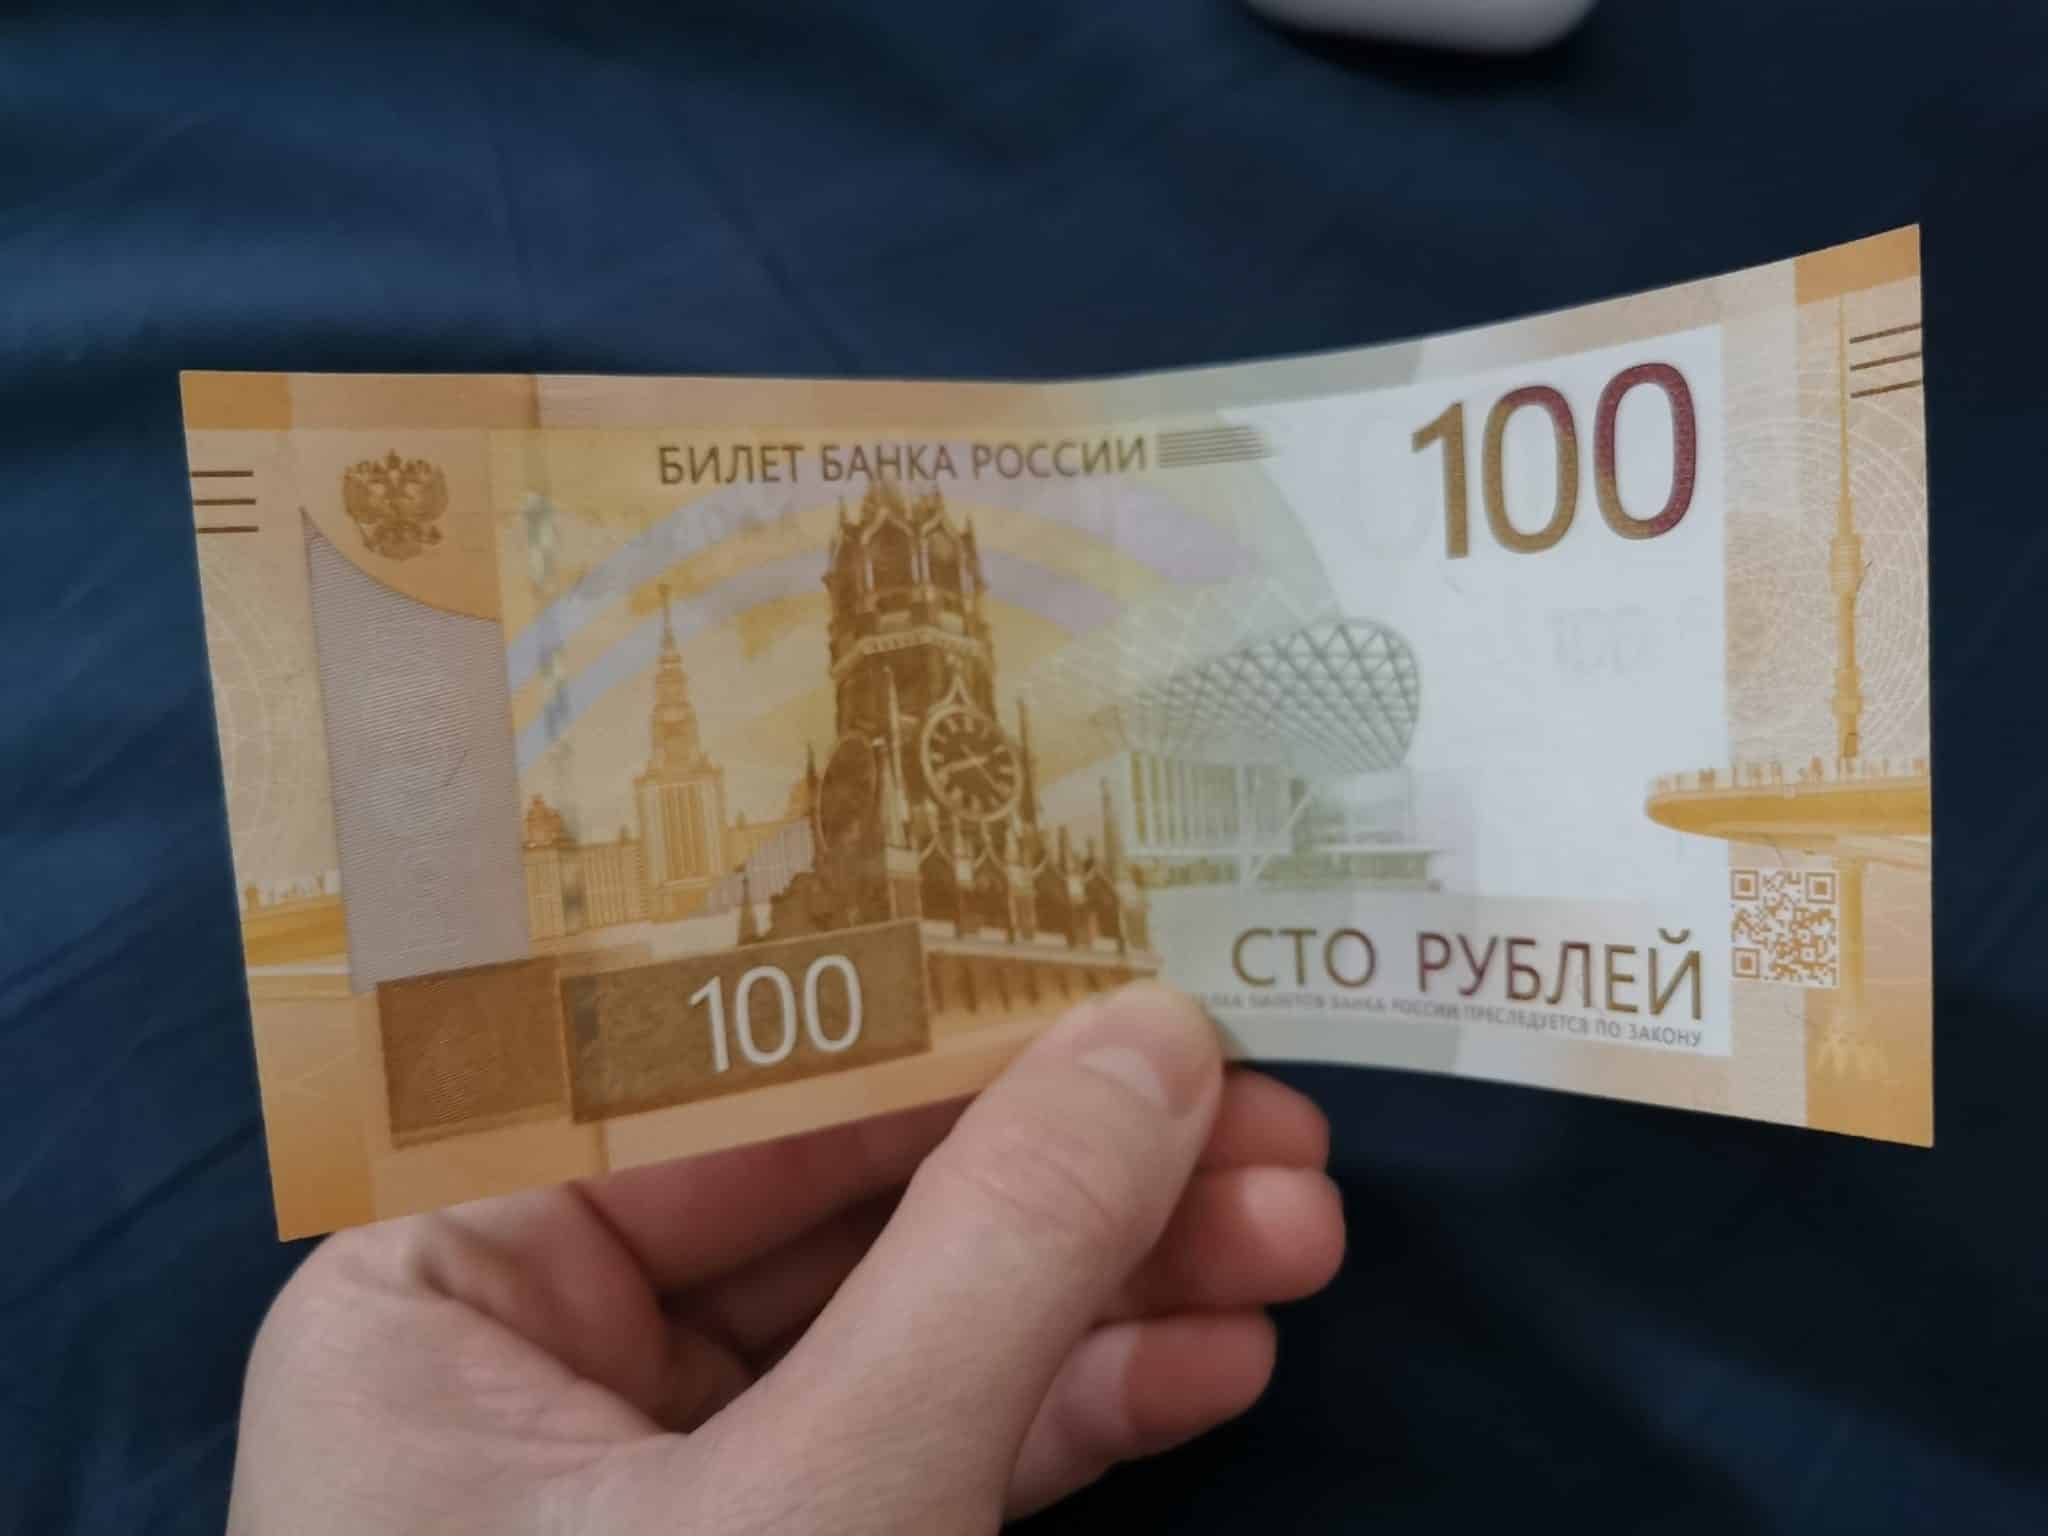 Новые деньги с QR-кодом появились в Омске - разглядываем свежие 100 рублей